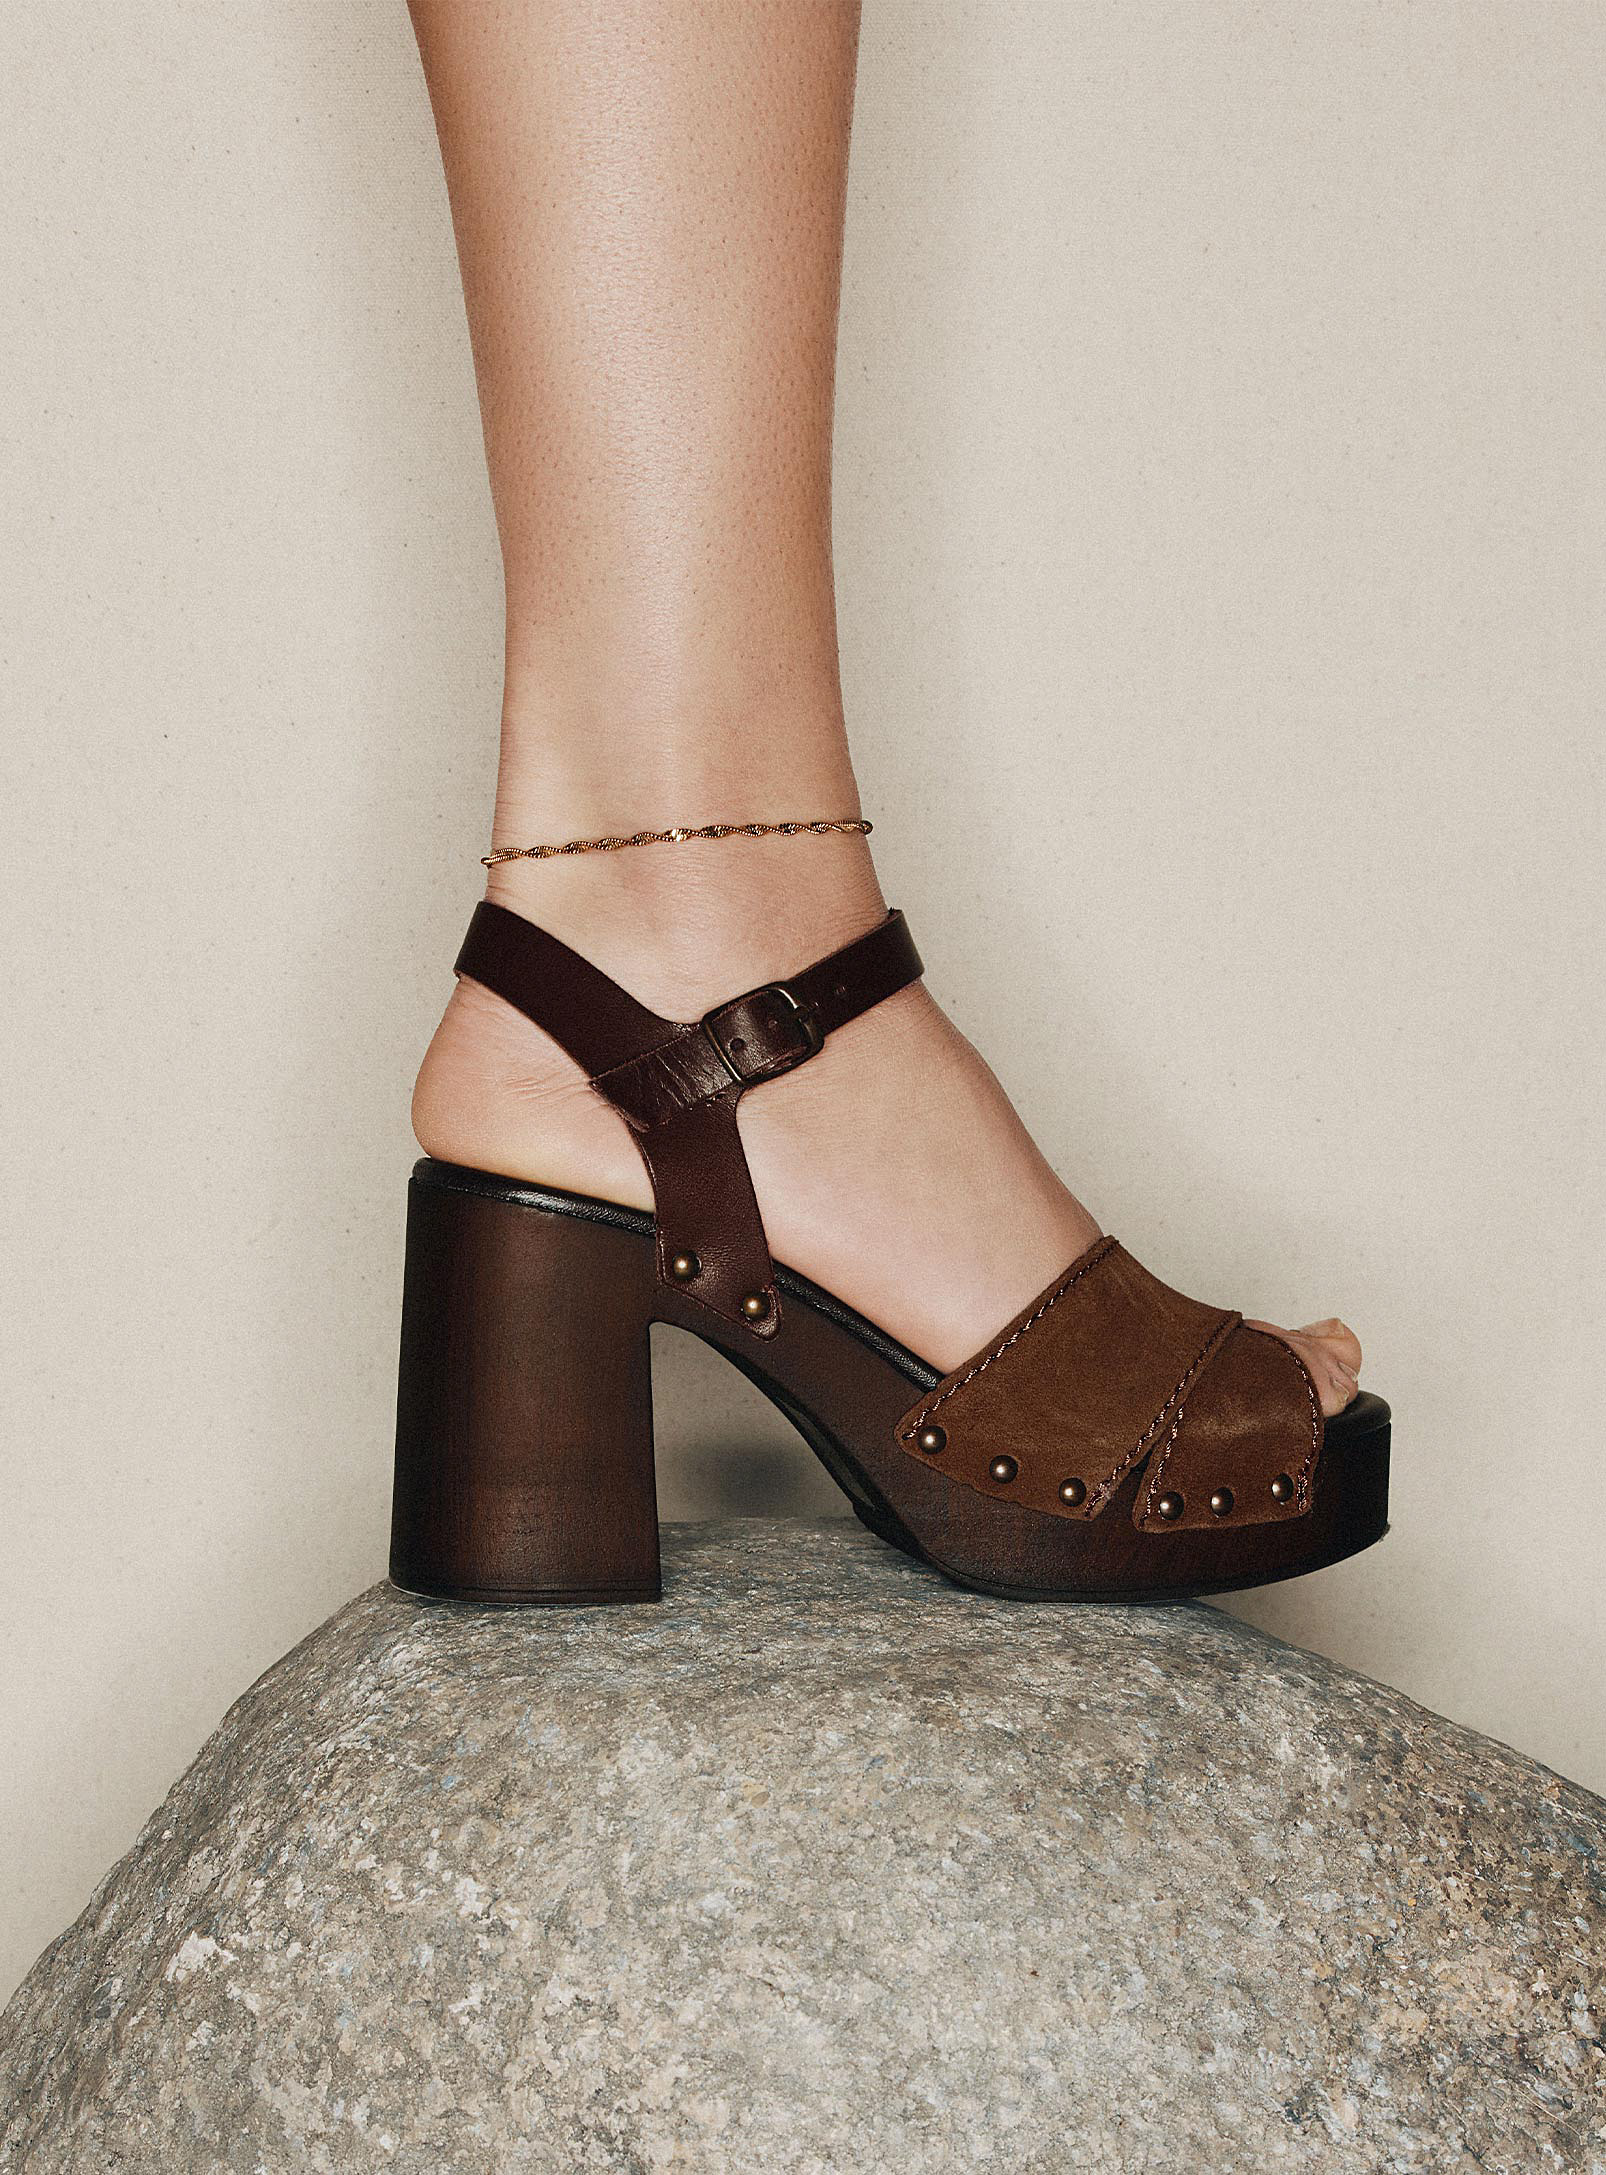 Simons - Women's Studded criss-cross strap platform sandals Women